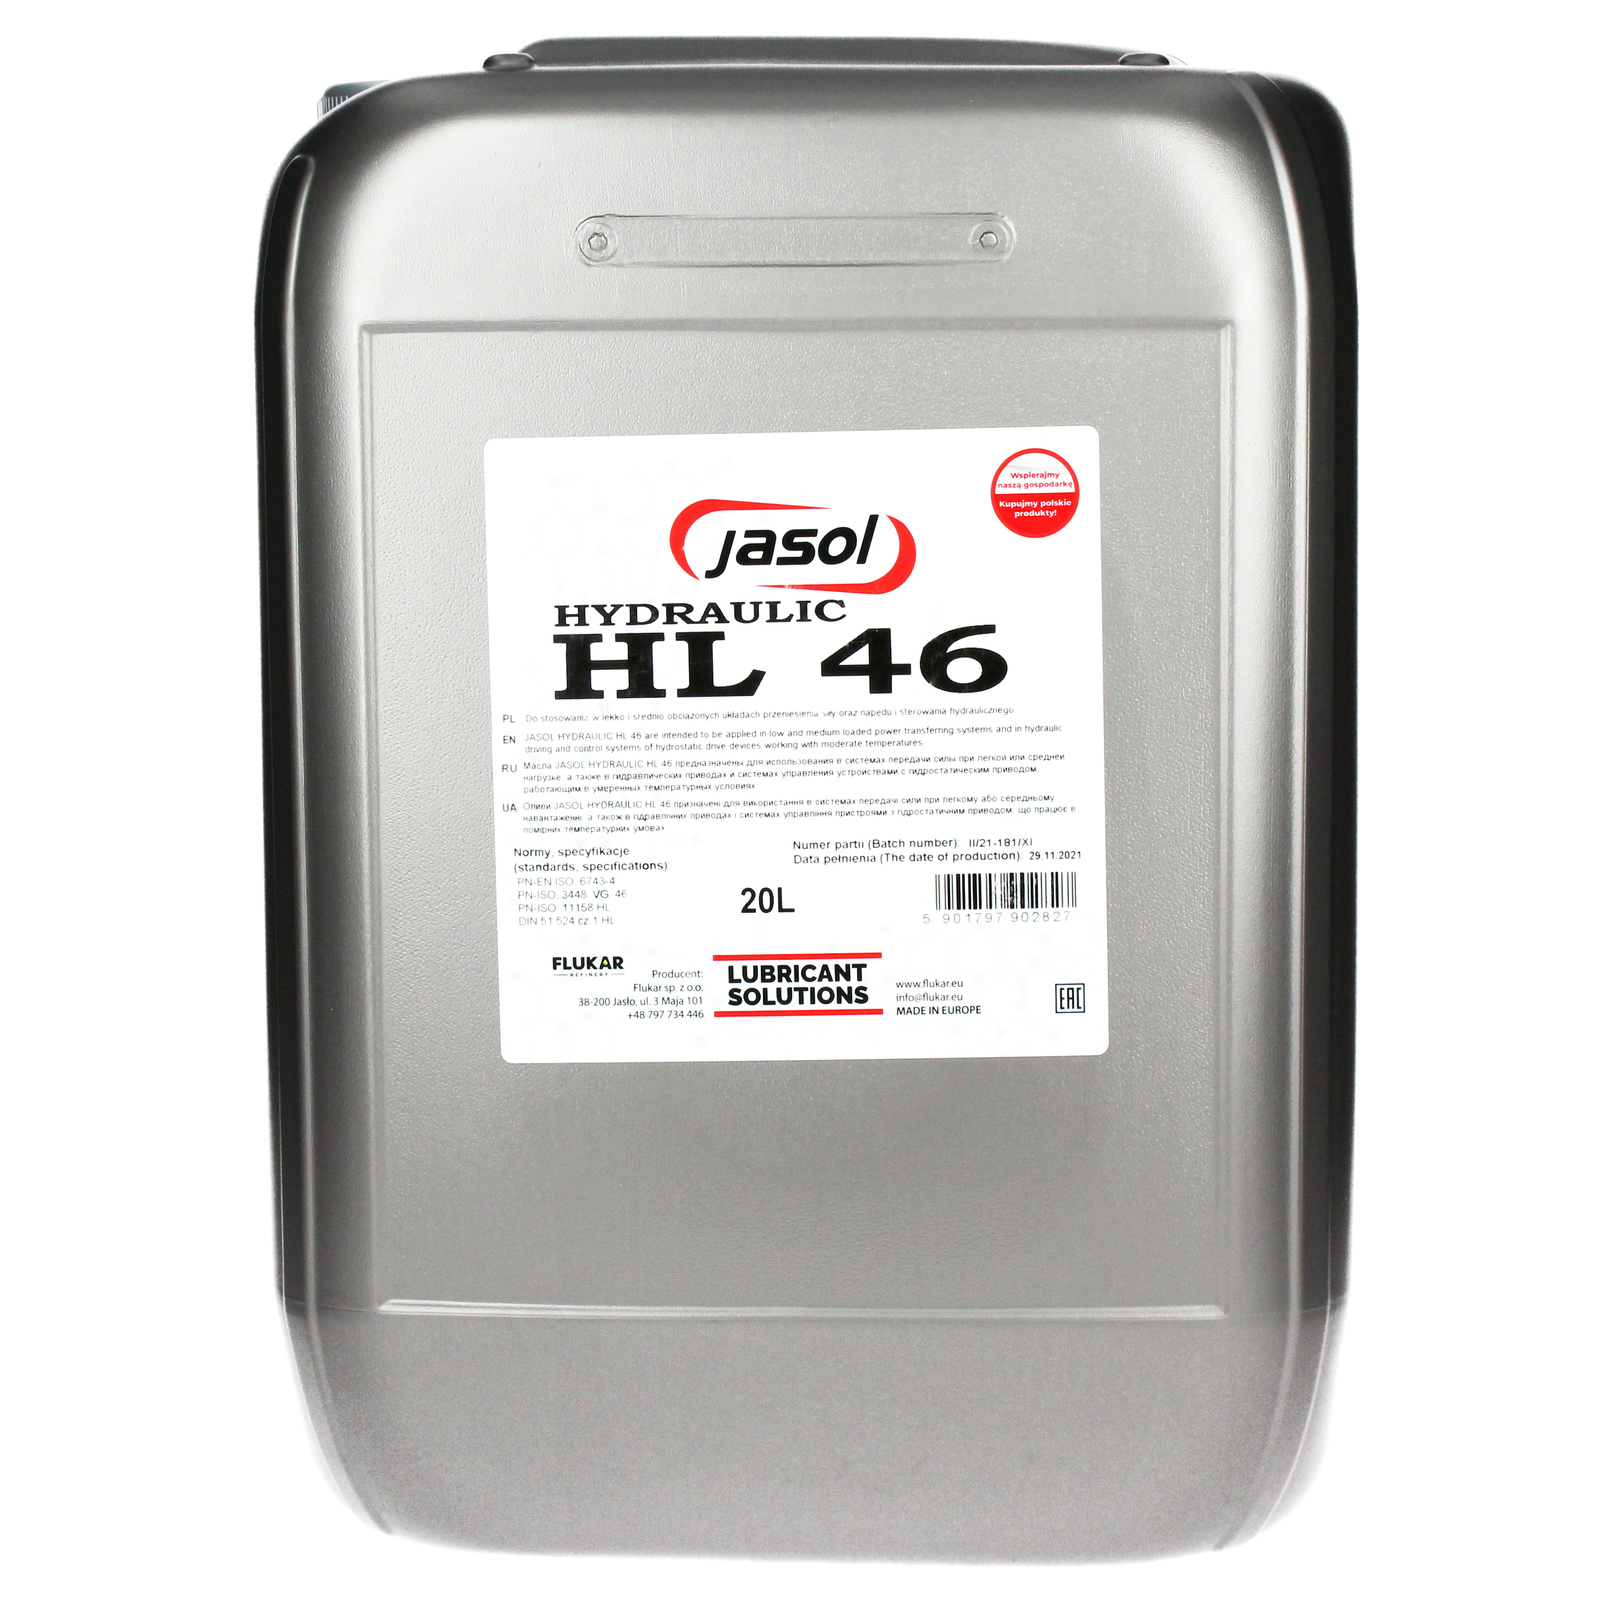 JASOL HL 46 hydraulic oil - 20L